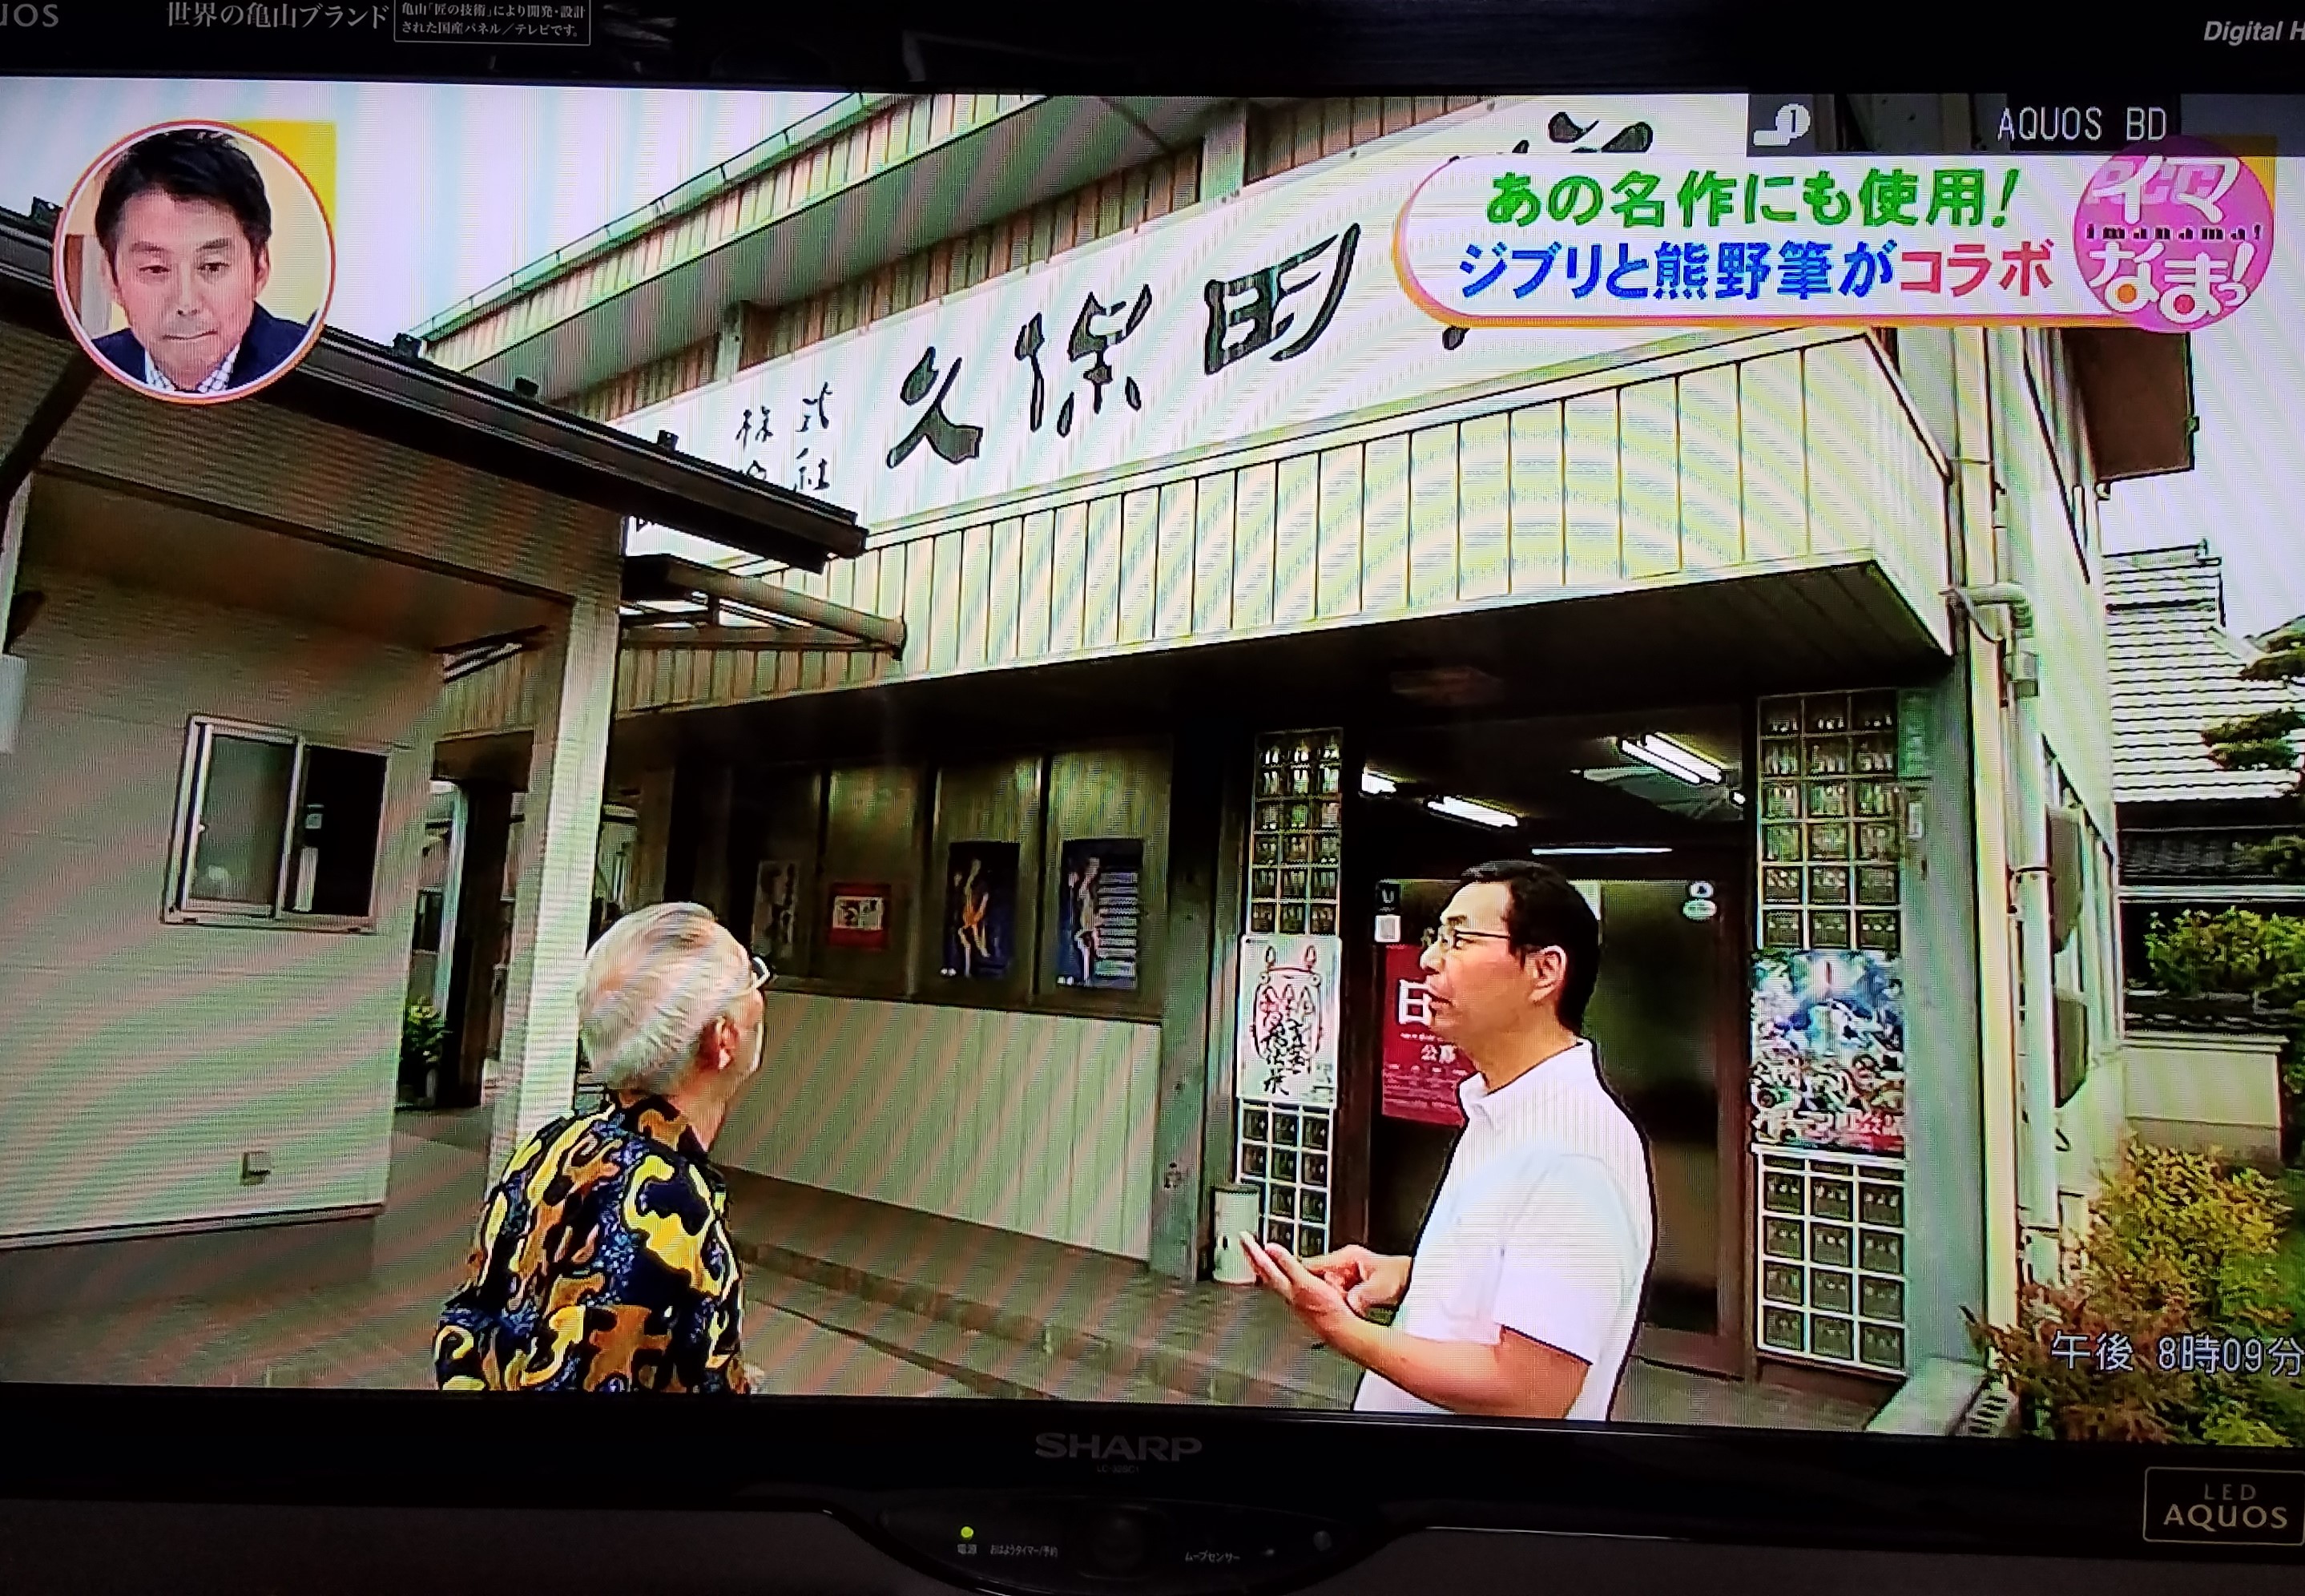 スタジオジブリの鈴木敏夫さんが久保田号を訪れてくださいました。